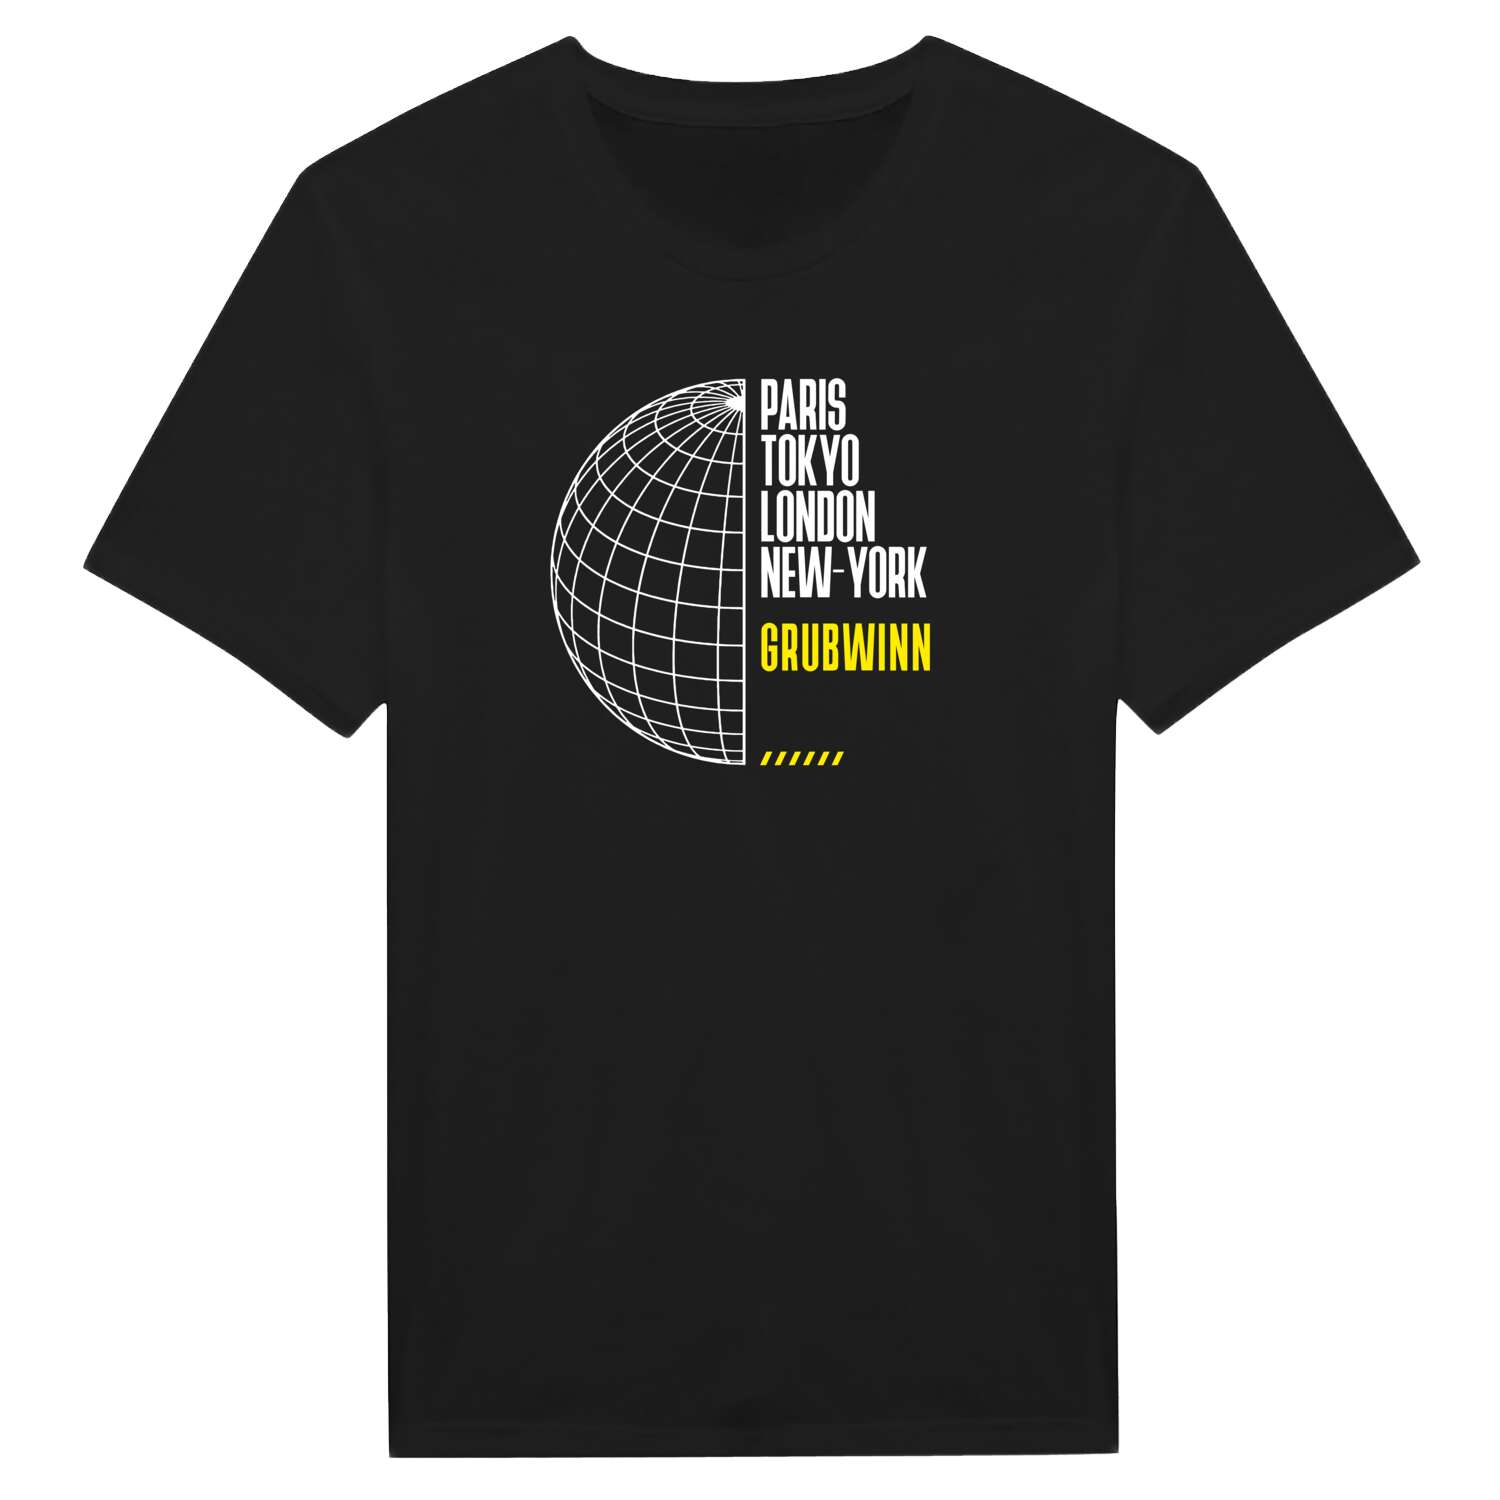 Grubwinn T-Shirt »Paris Tokyo London«